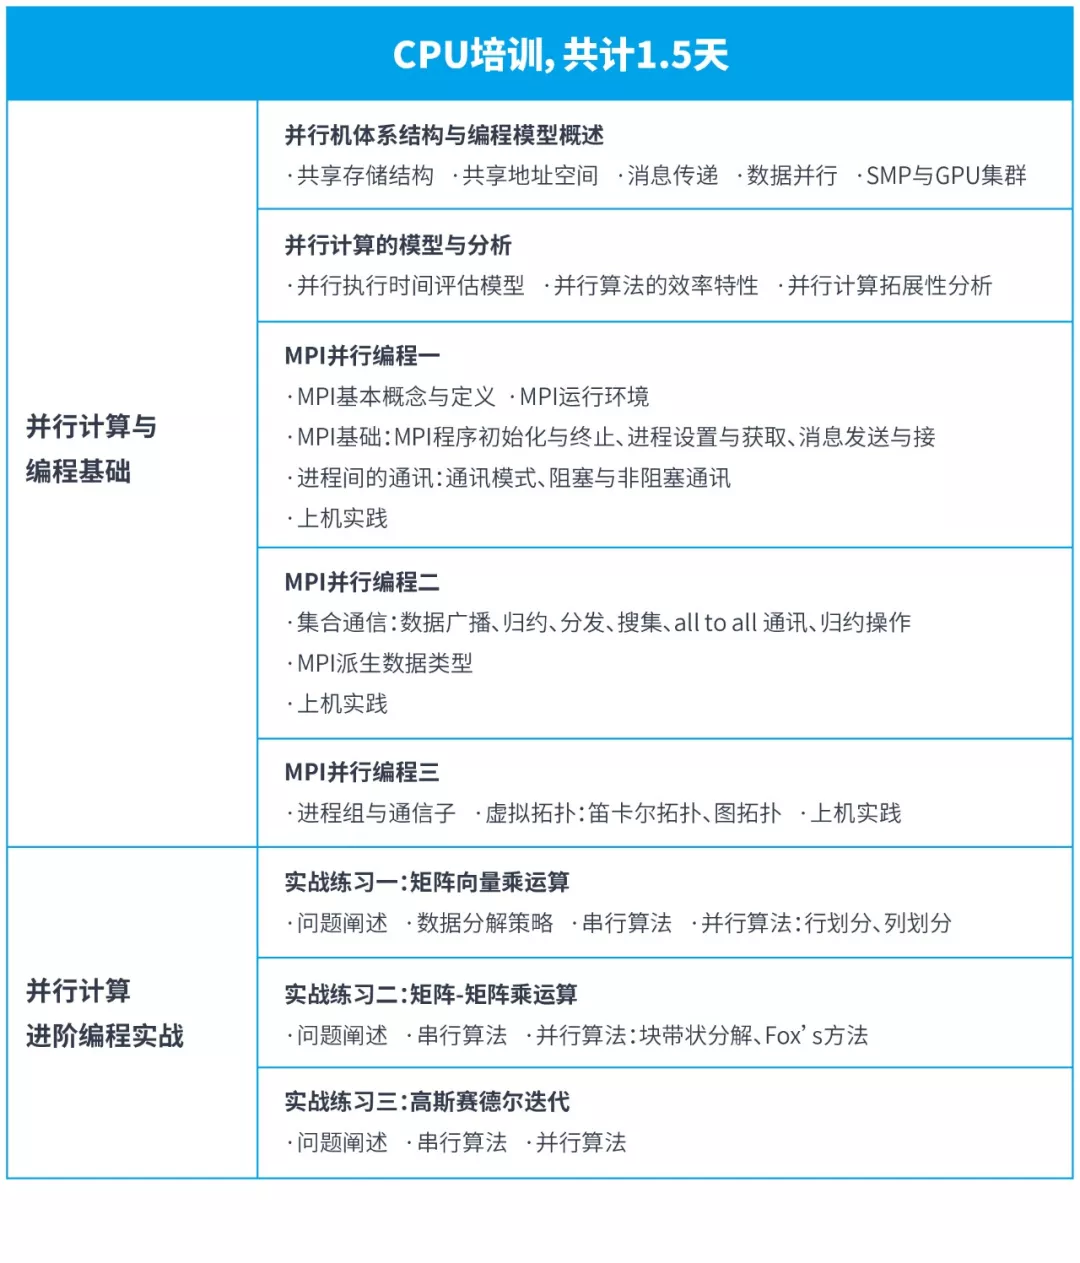 2019高性能计算应用解决方案培训（6月北京班）